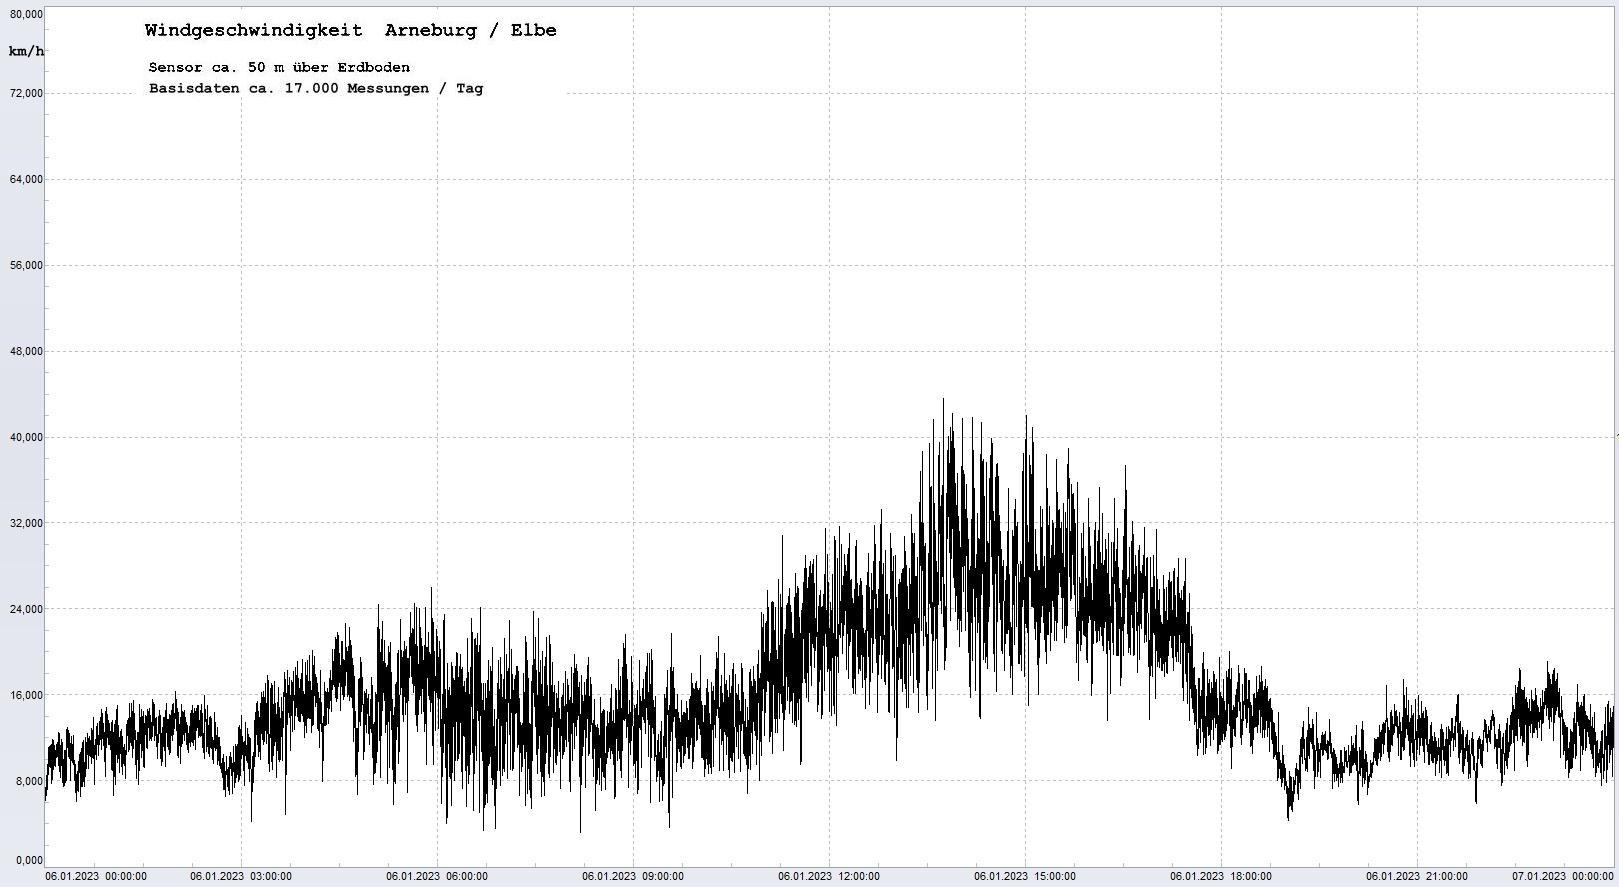 Arneburg Tages-Diagramm Winddaten, 06.01.2023
  Diagramm, Sensor auf Gebäude, ca. 50 m über Erdboden, Basis: 5s-Aufzeichnung